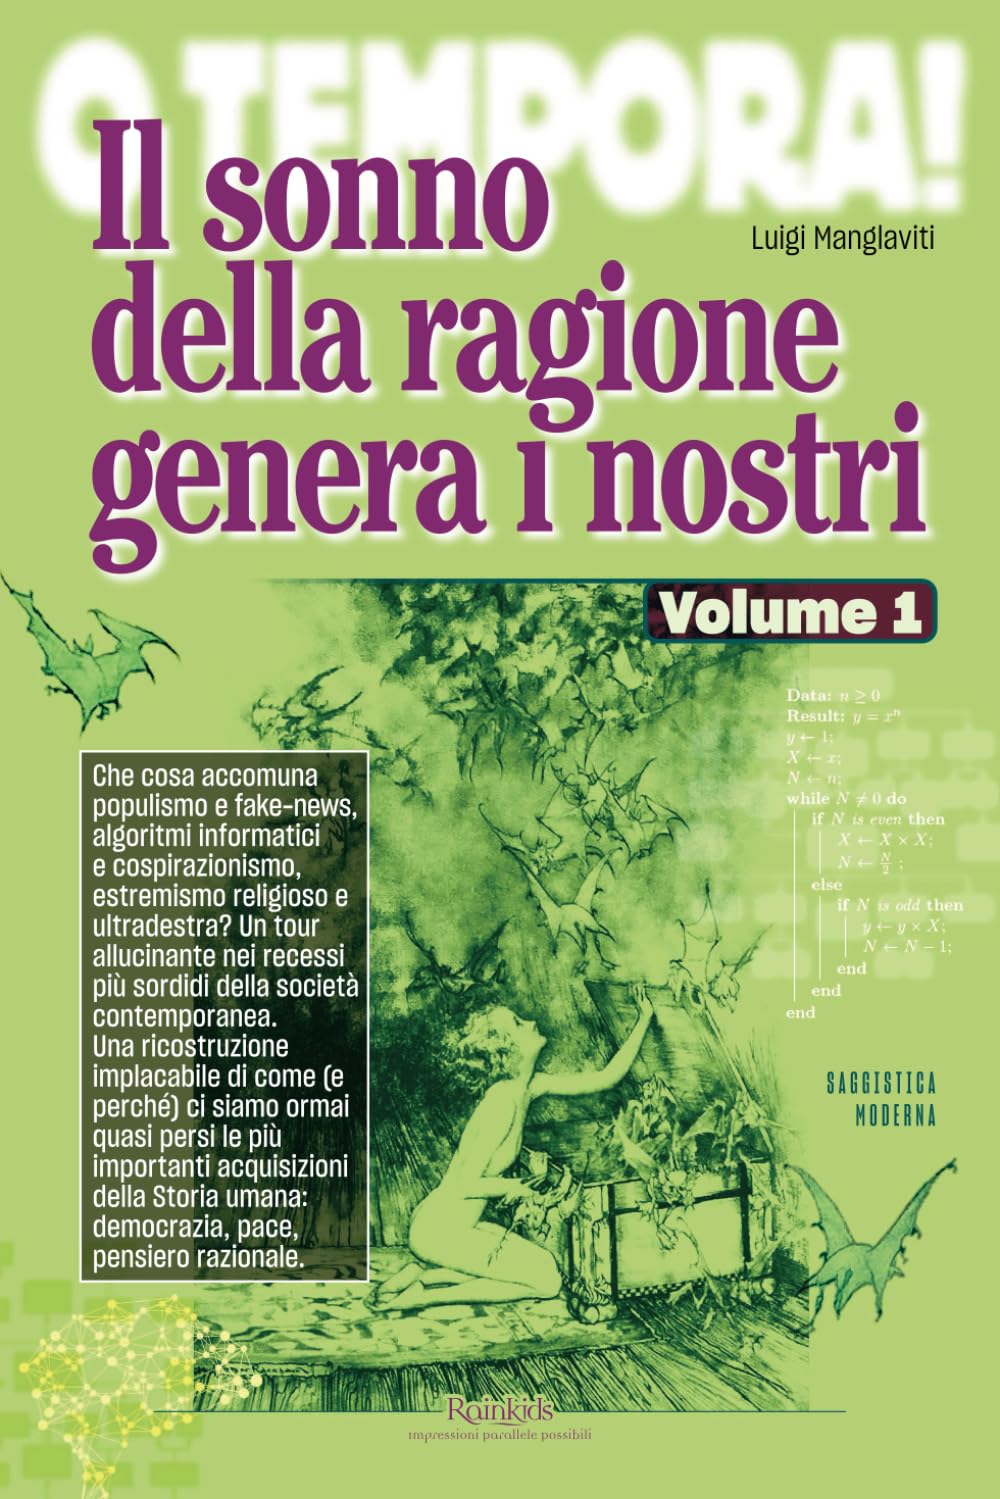 Luigi Manglaviti: Il sonno della ragione genera i nostri - Volume 1 (Italiano language, Rainkids)